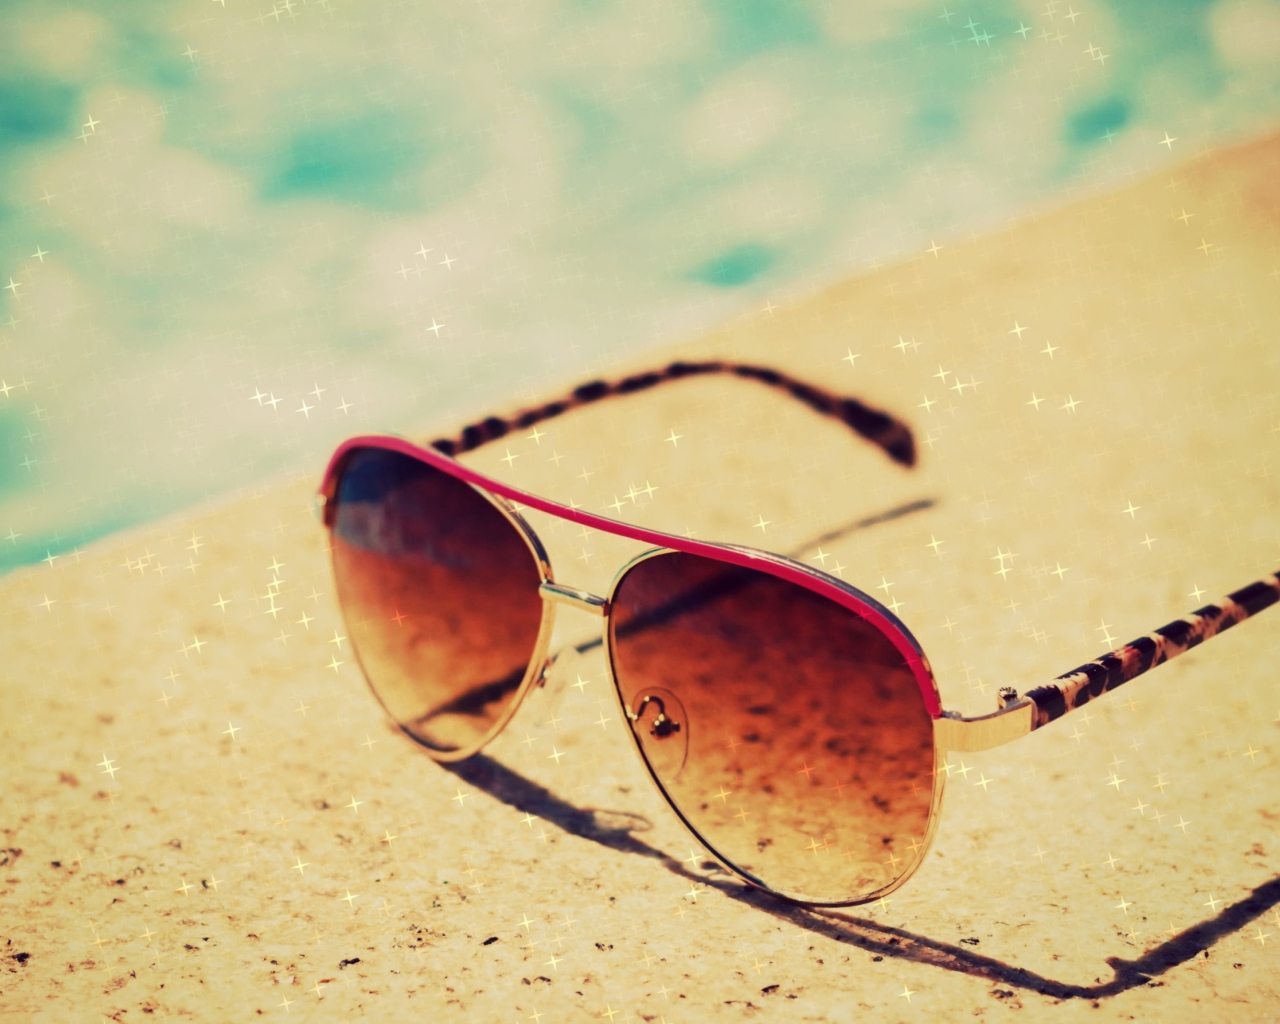 Das Sunglasses By Pool Wallpaper 1280x1024